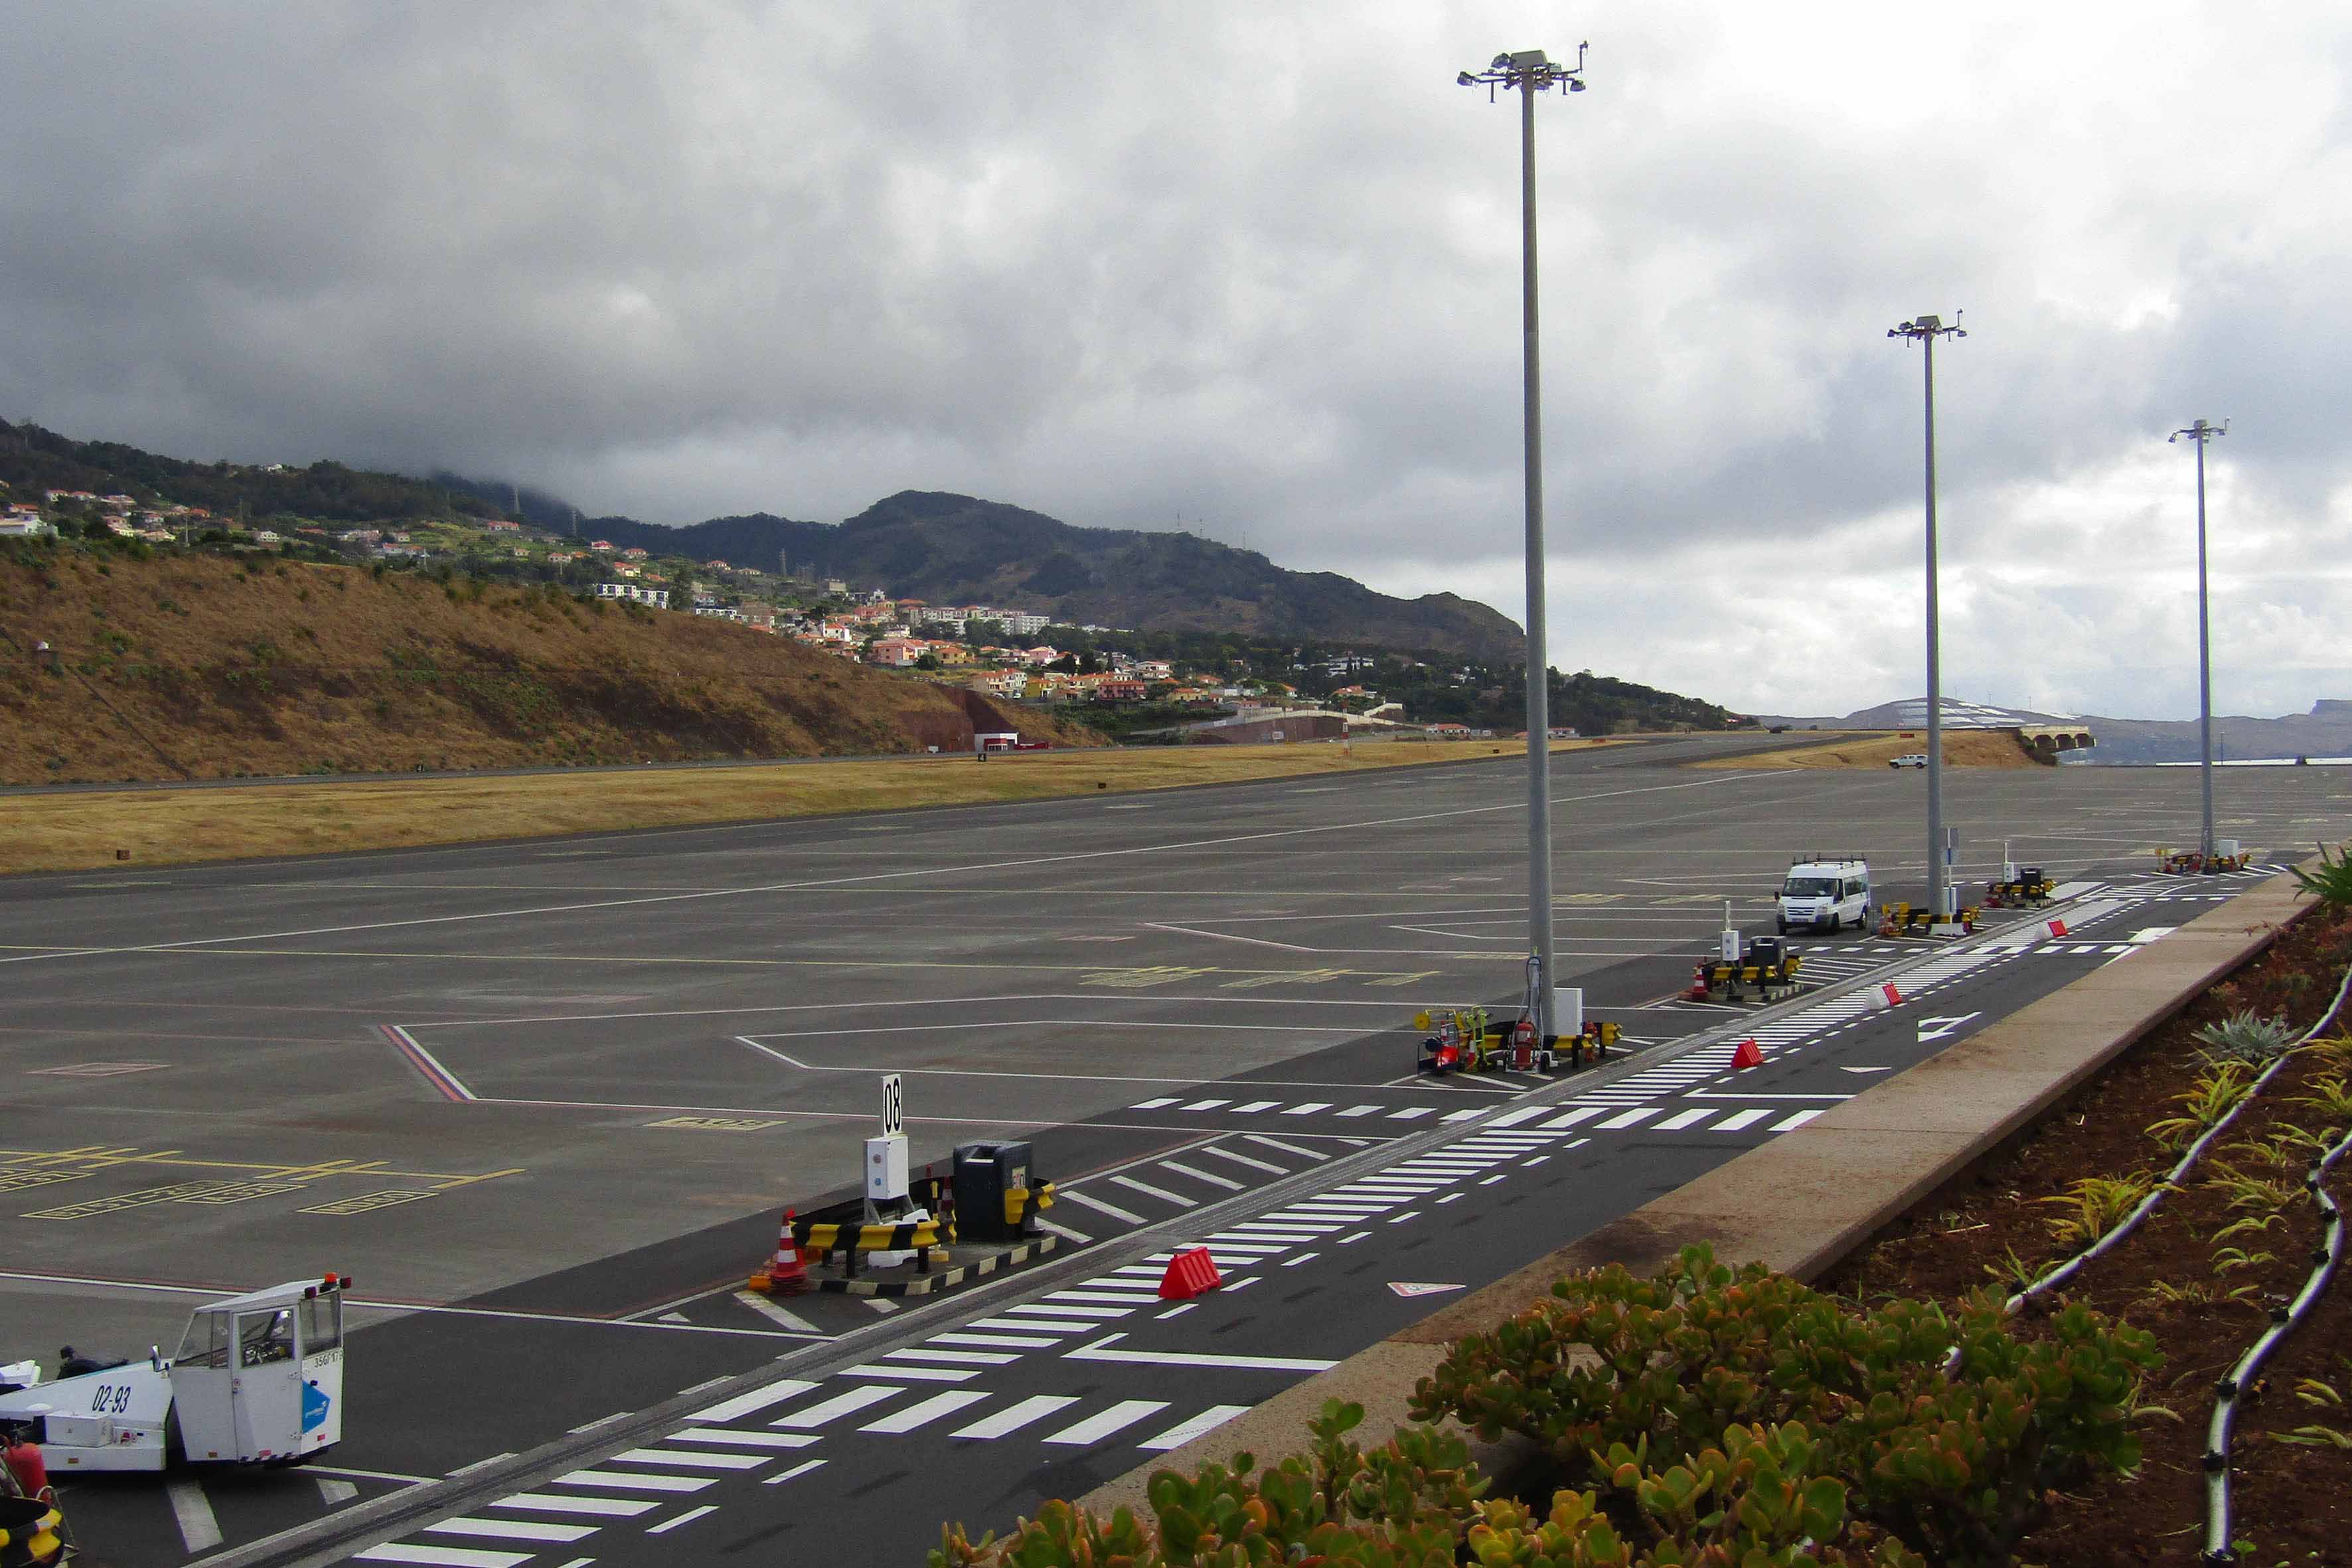 Aeroporto de Santa Cruz - Cristiano Ronaldo Img_0716